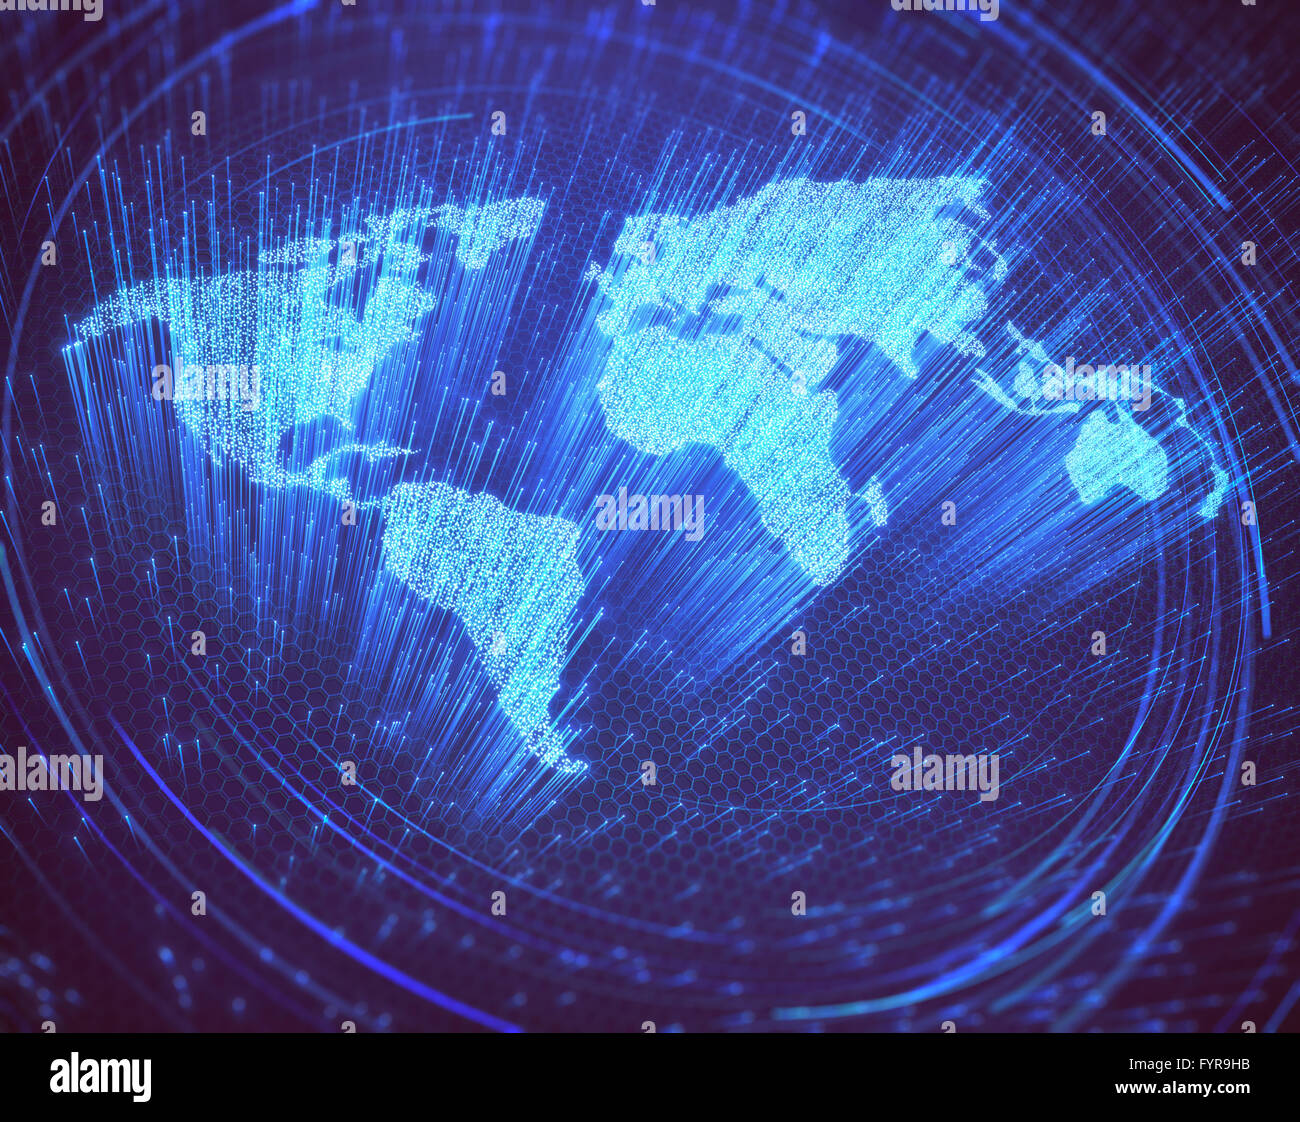 Fibre ottiche illuminate in forma di mappa del mondo. Immagine 3D concetto di comunicazione globale mediante fibra ottica. Foto Stock